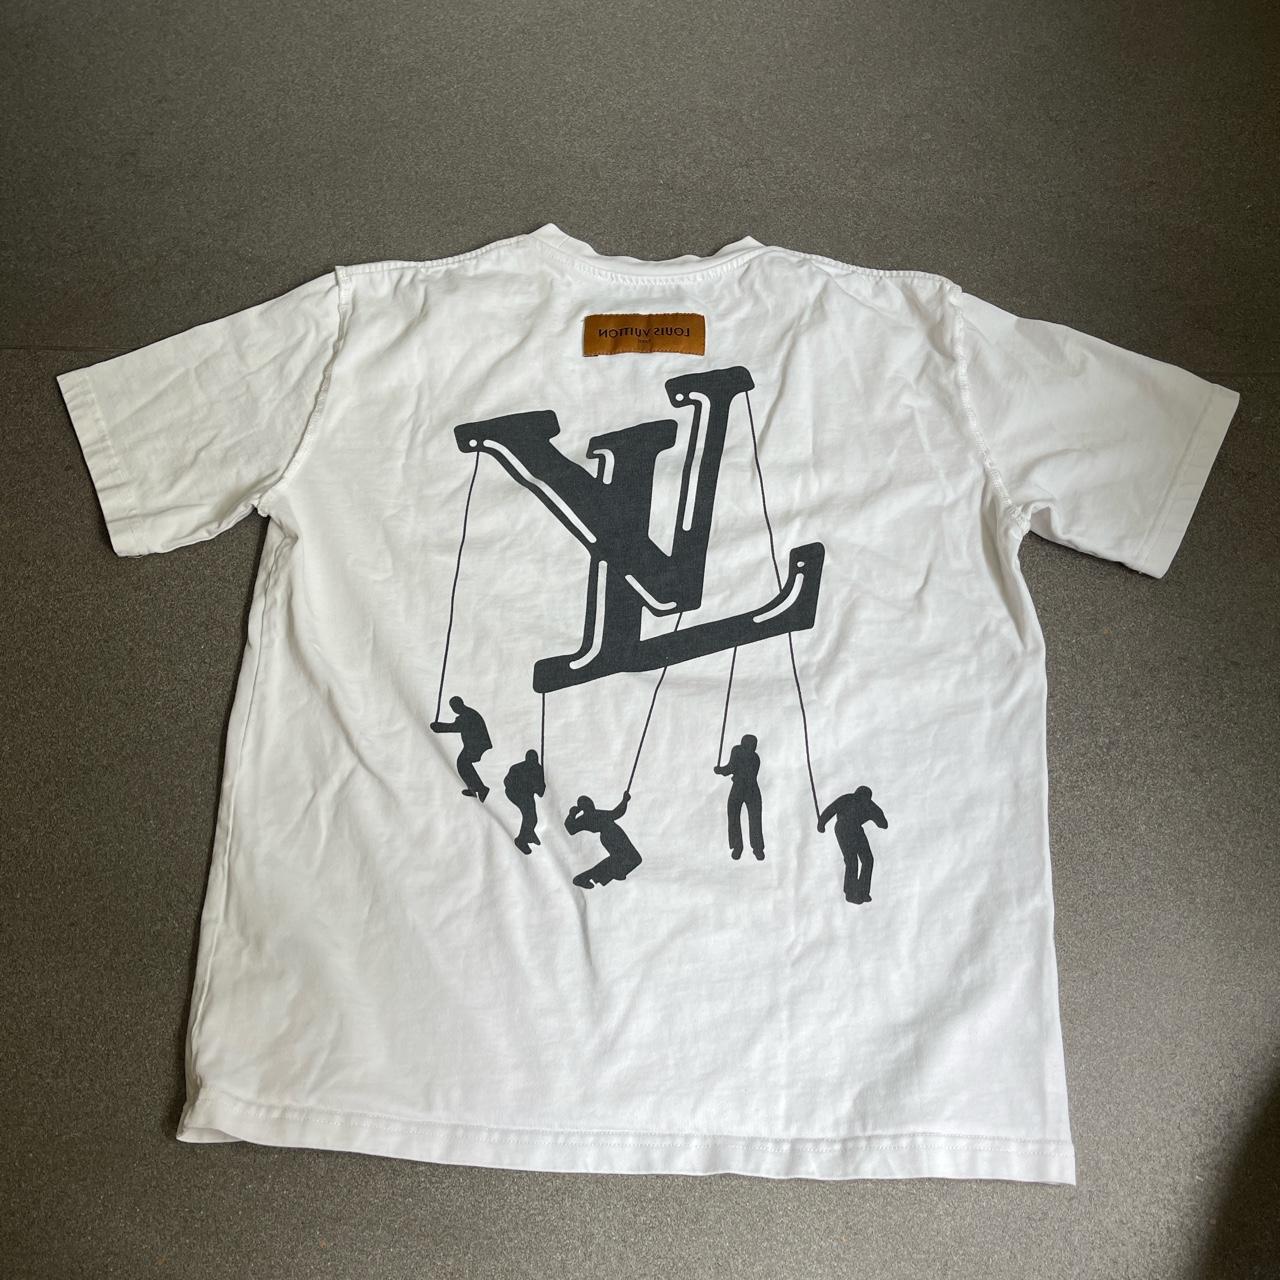 Louis Vuitton shirt Small Good condition - Depop